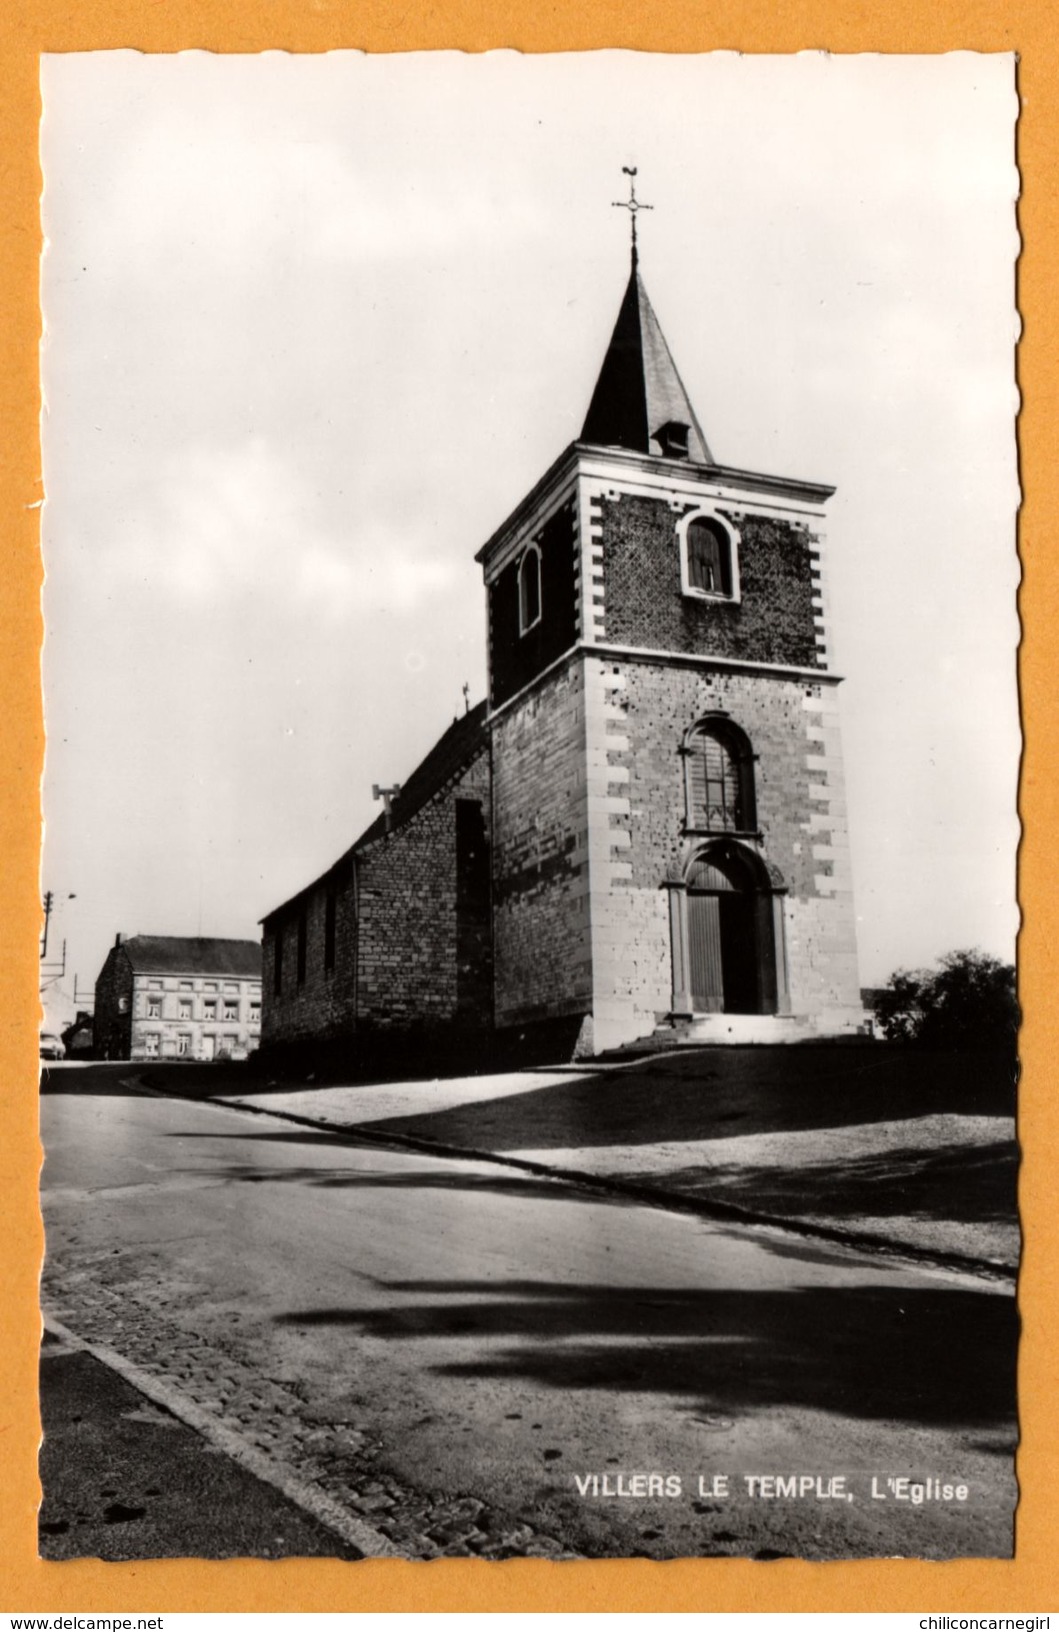 Villers Le Temple - L'Eglise - A. SMETZ - Maison FRAITURE - Nandrin